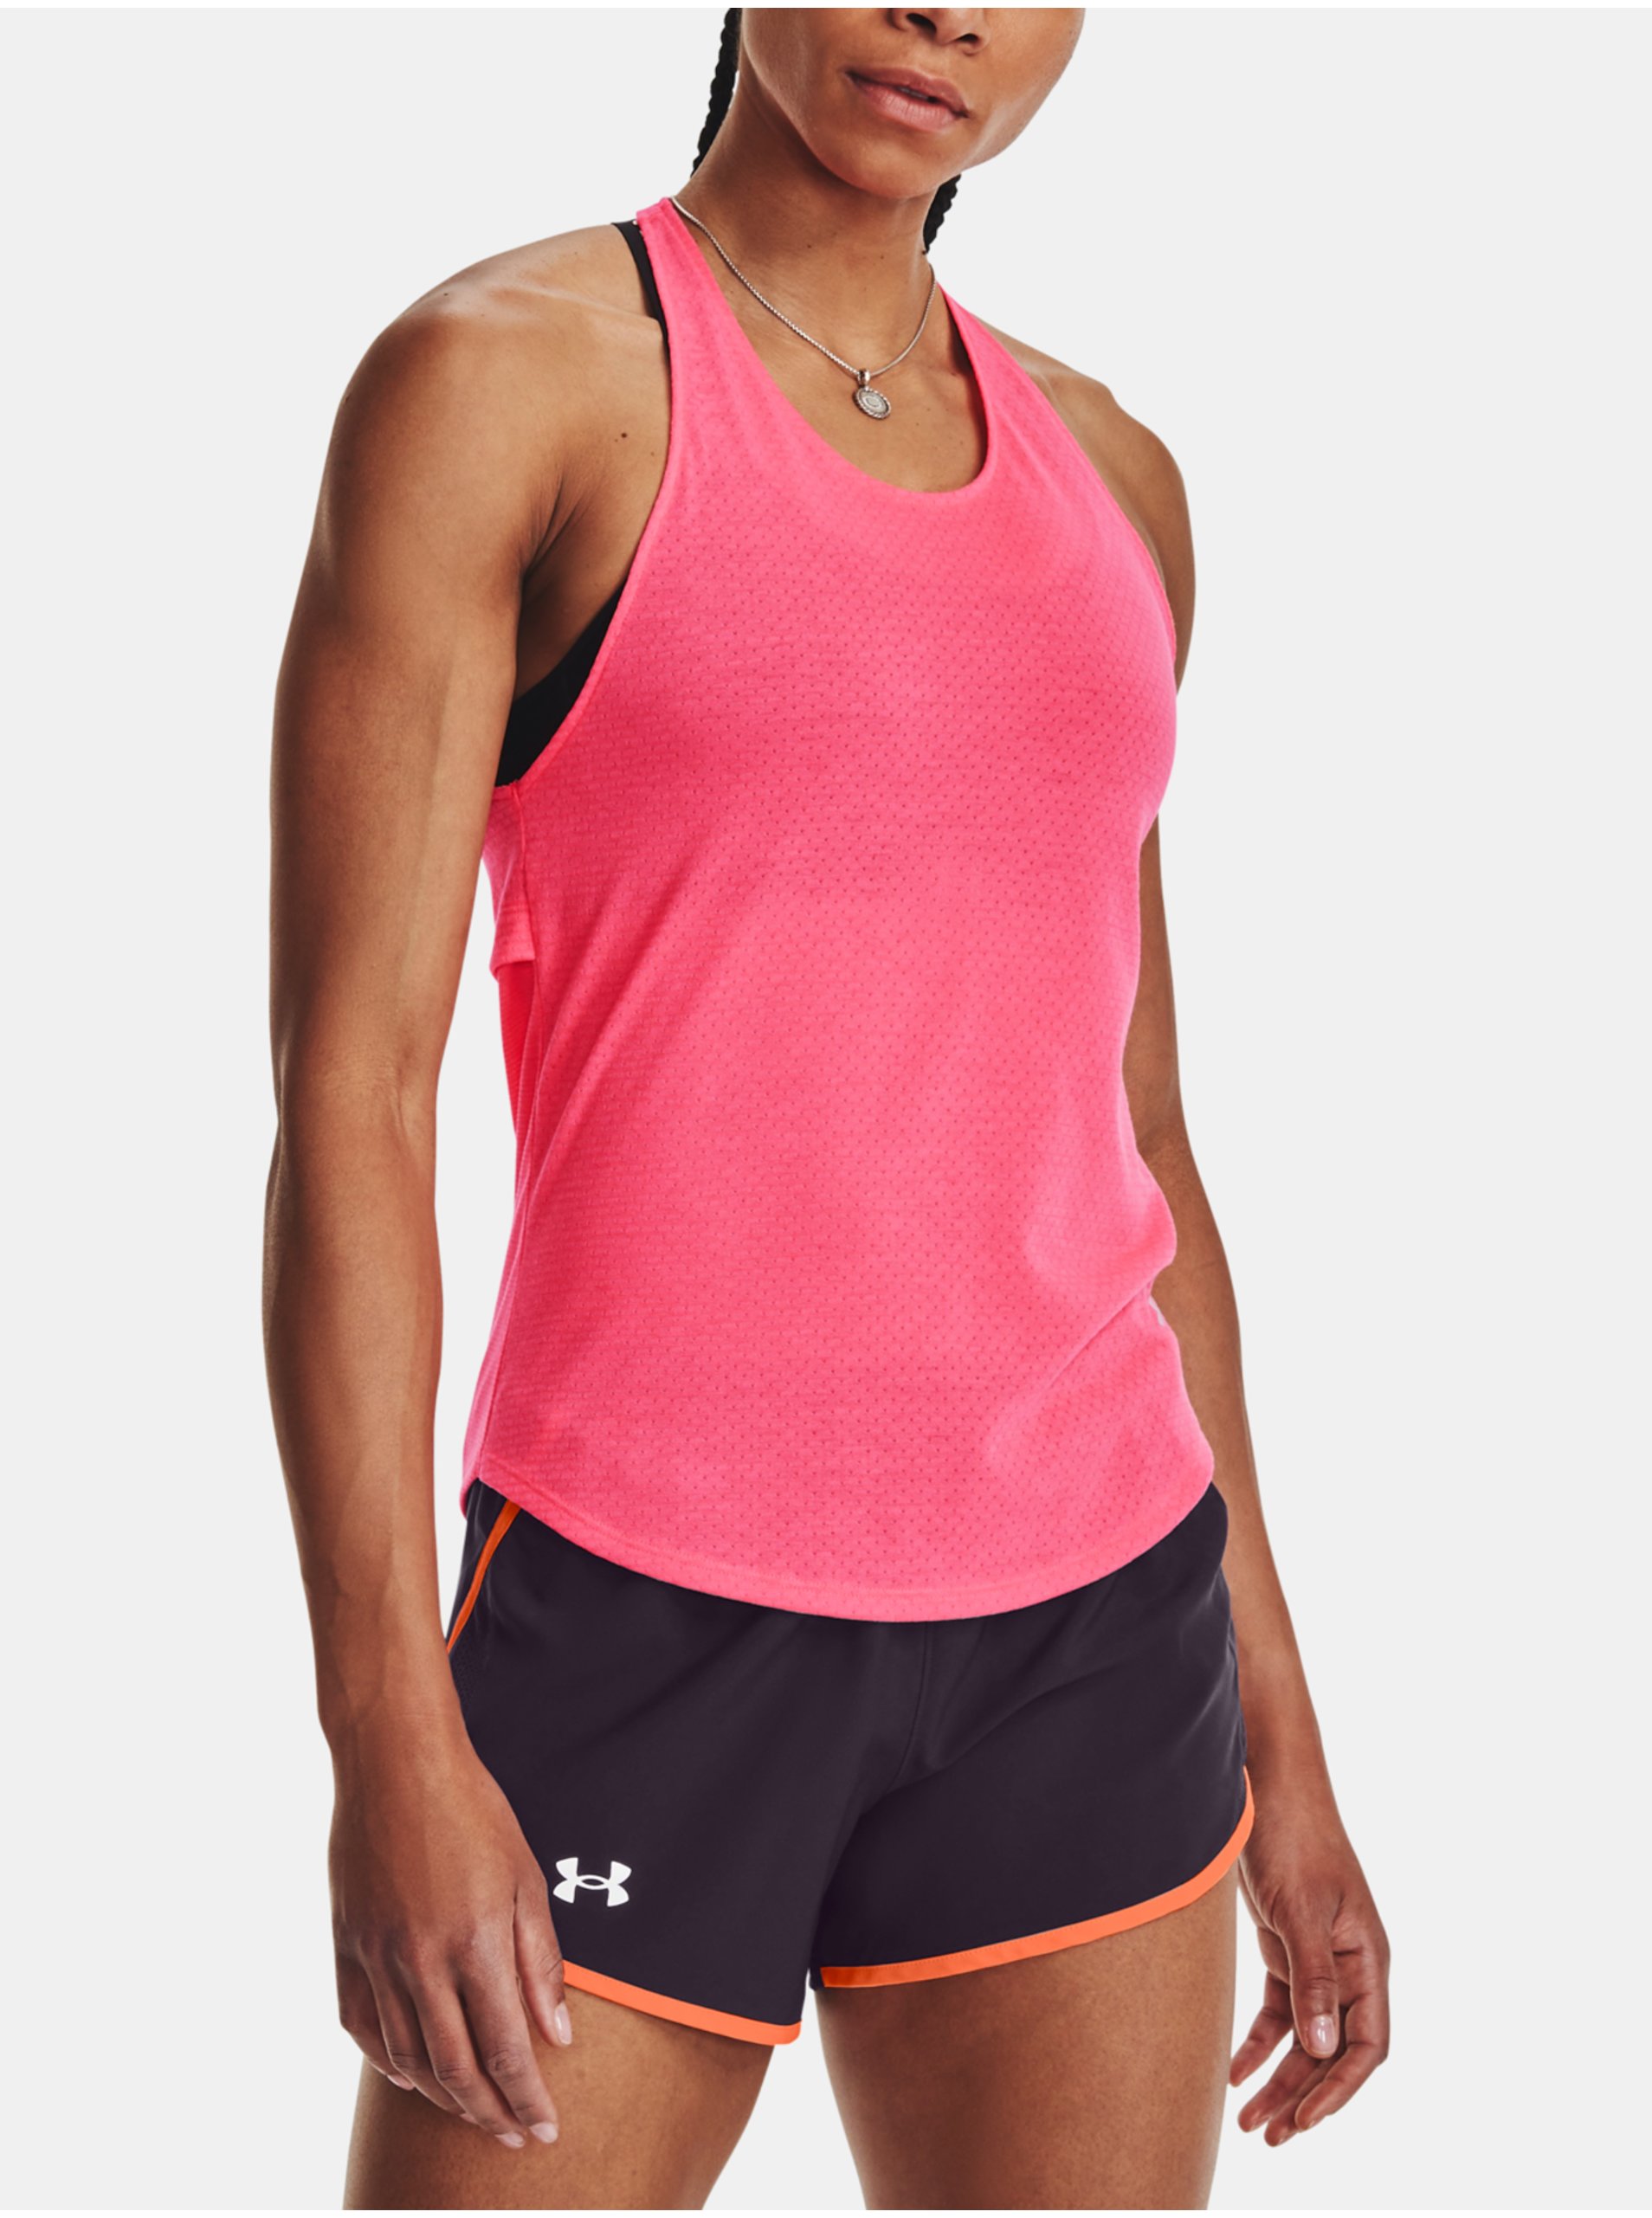 E-shop Neonově růžové dámské sportovní tílko Under Armour UA Streaker